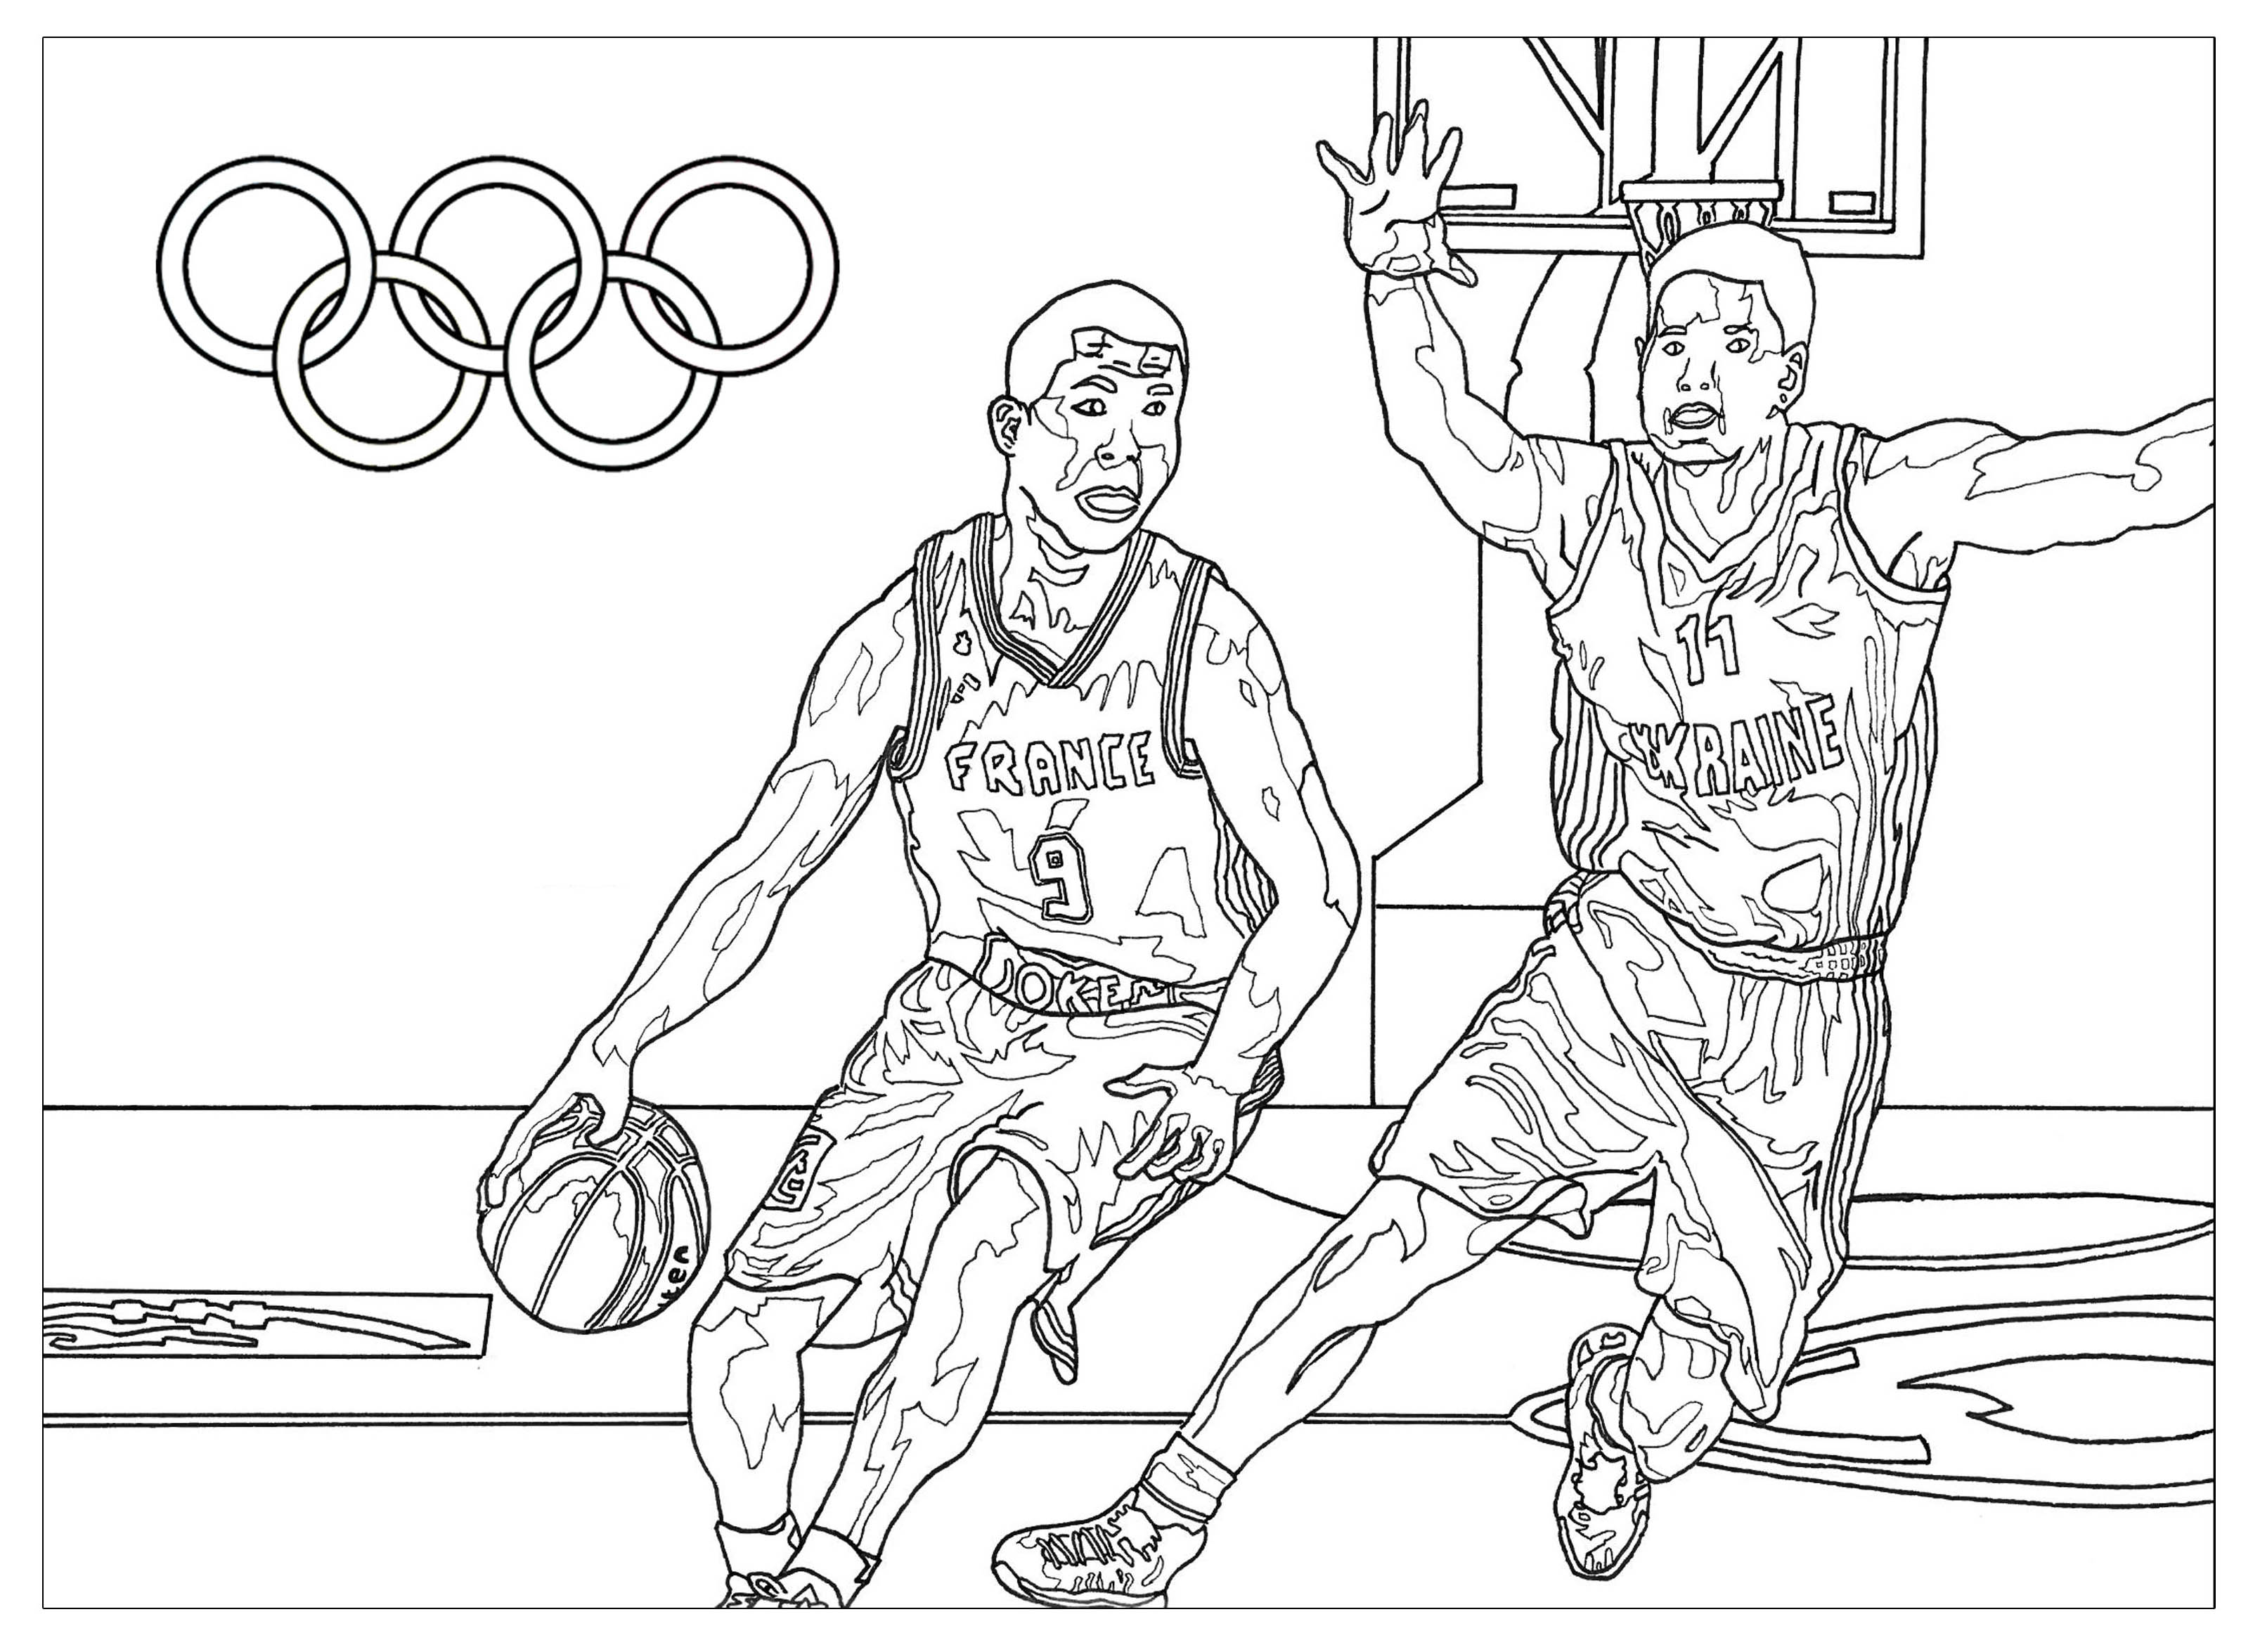 Jogos Olímpicos novos desenhos para imprimir colorir e pintar - Desenhos  para pintar e colorir